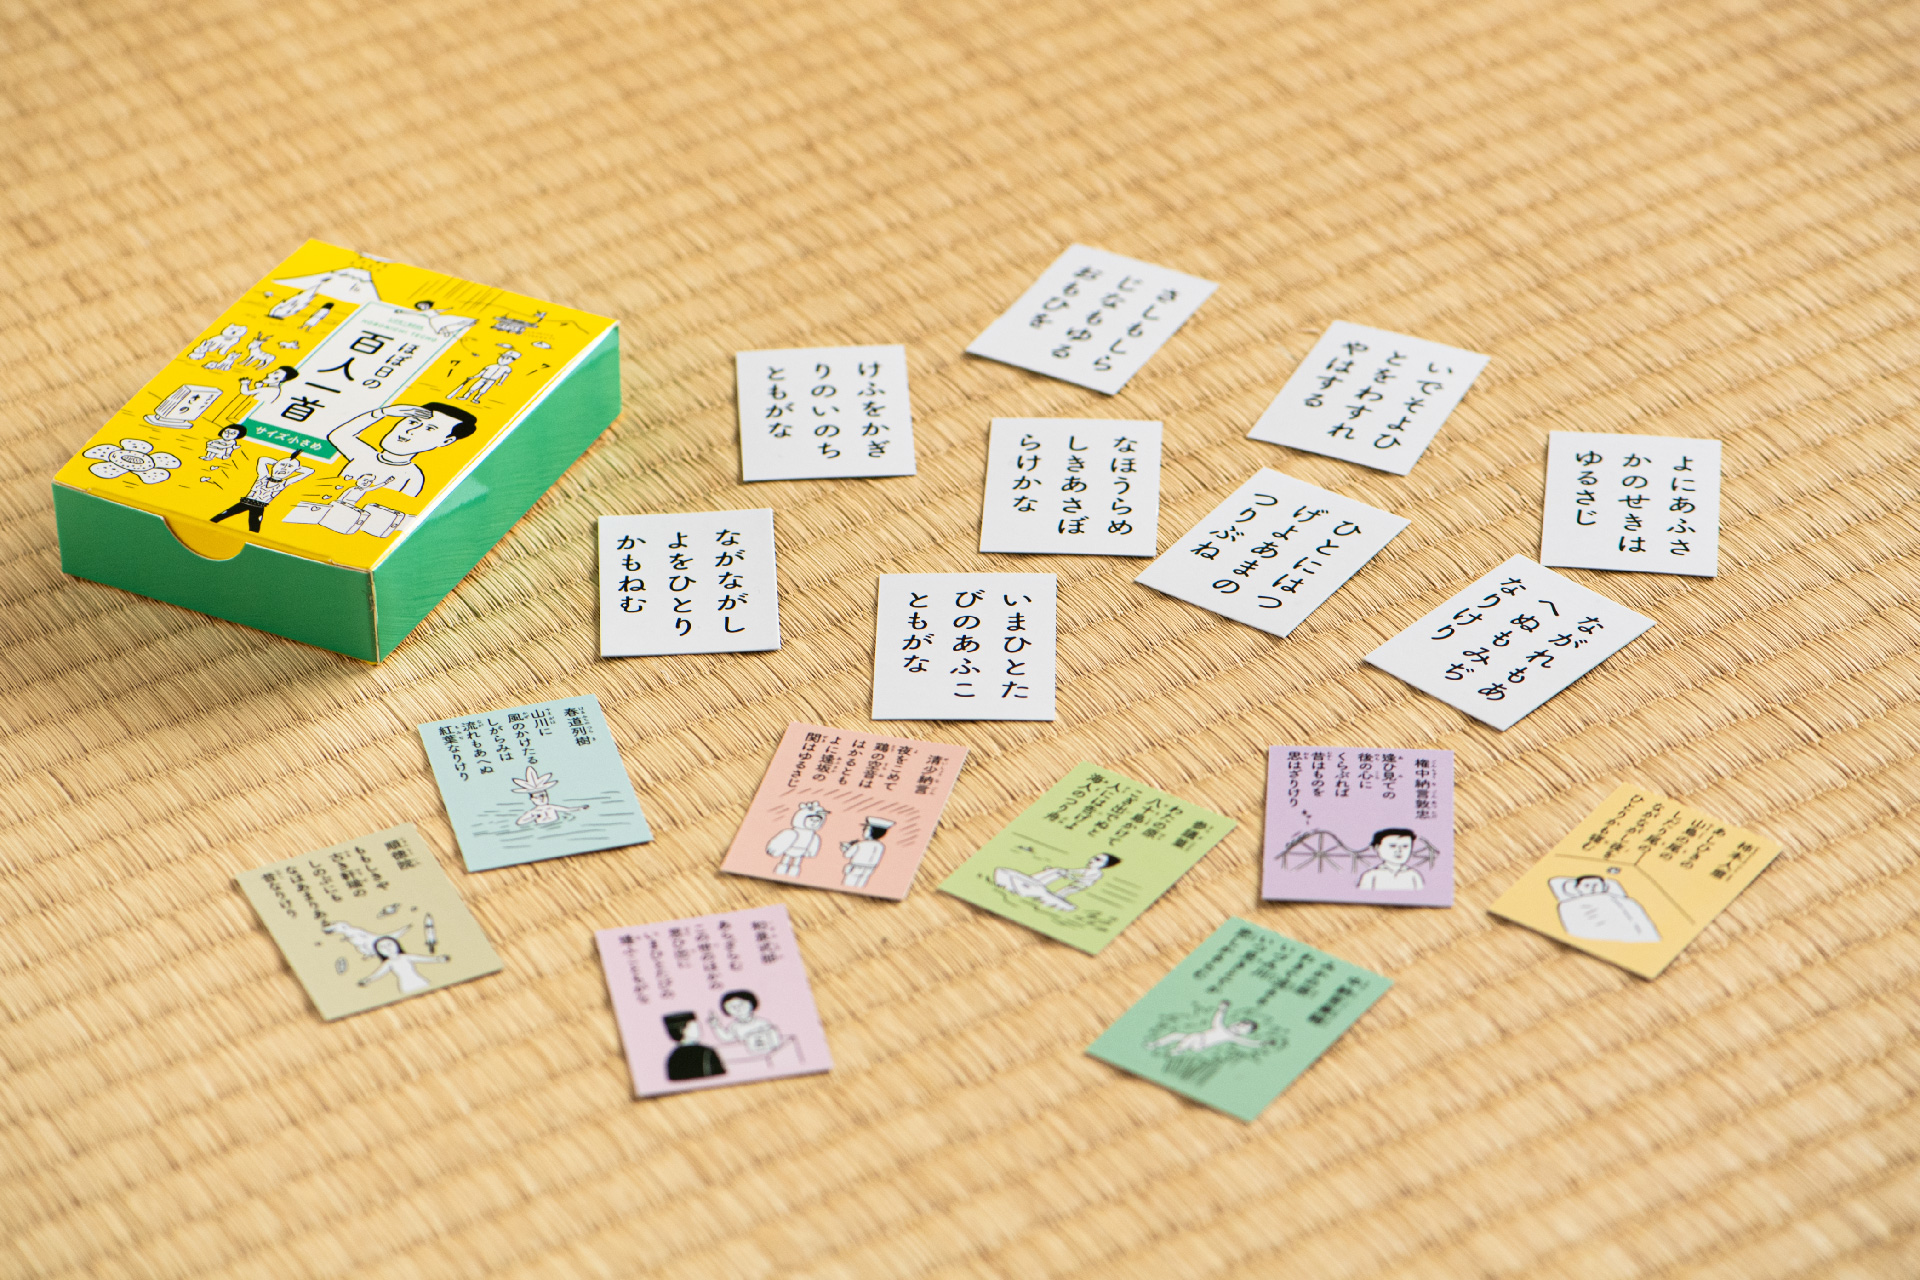 NEW Hobonichi Store Exclusive Bonus Card Game Hyakunin Isshu Karuta Chihayafuru 